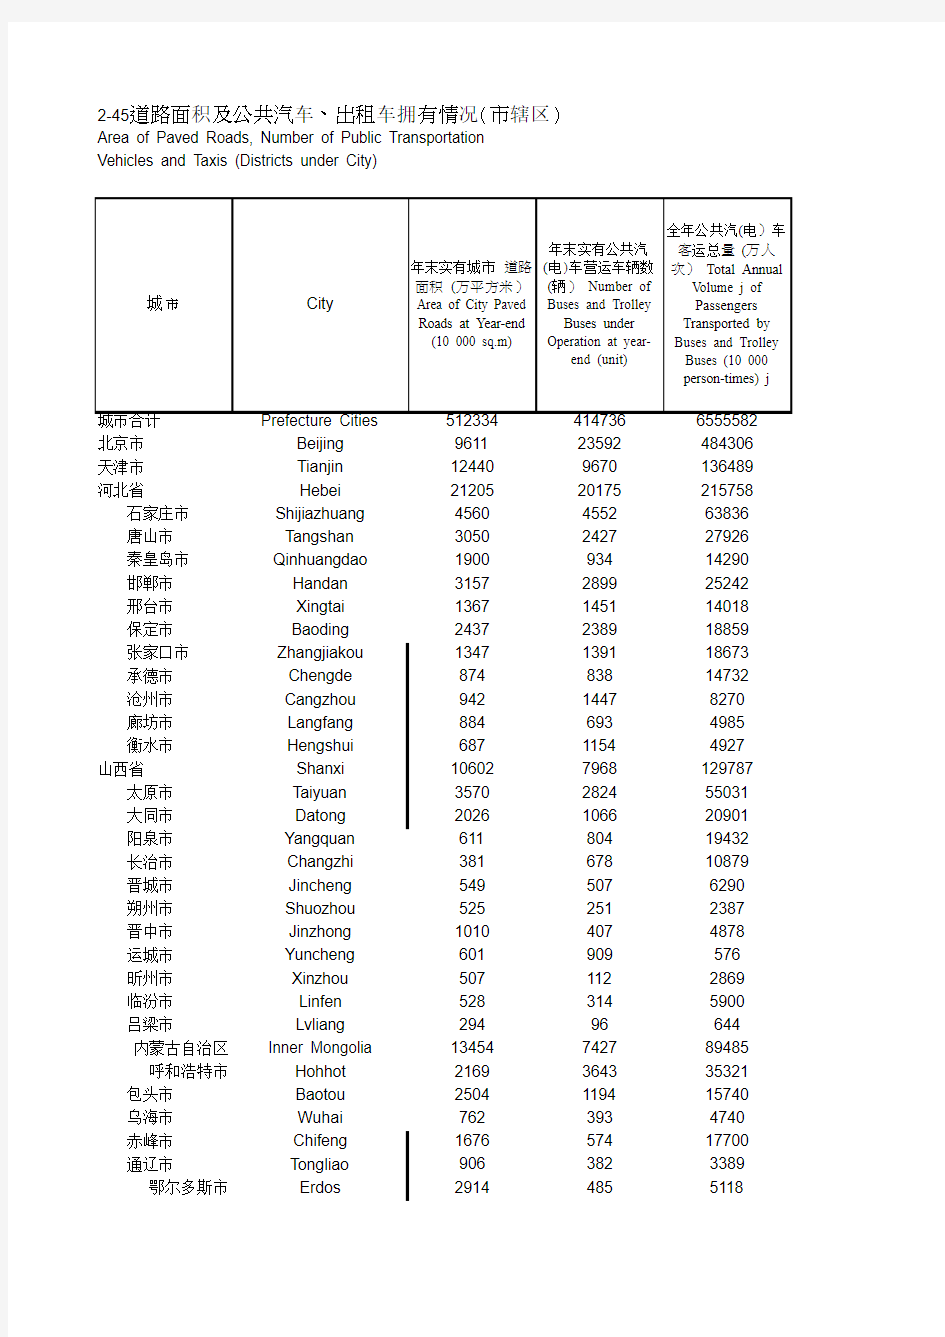 中国城市统计年鉴2014 道路面积及公共汽车、出租车拥有情况(市辖区)